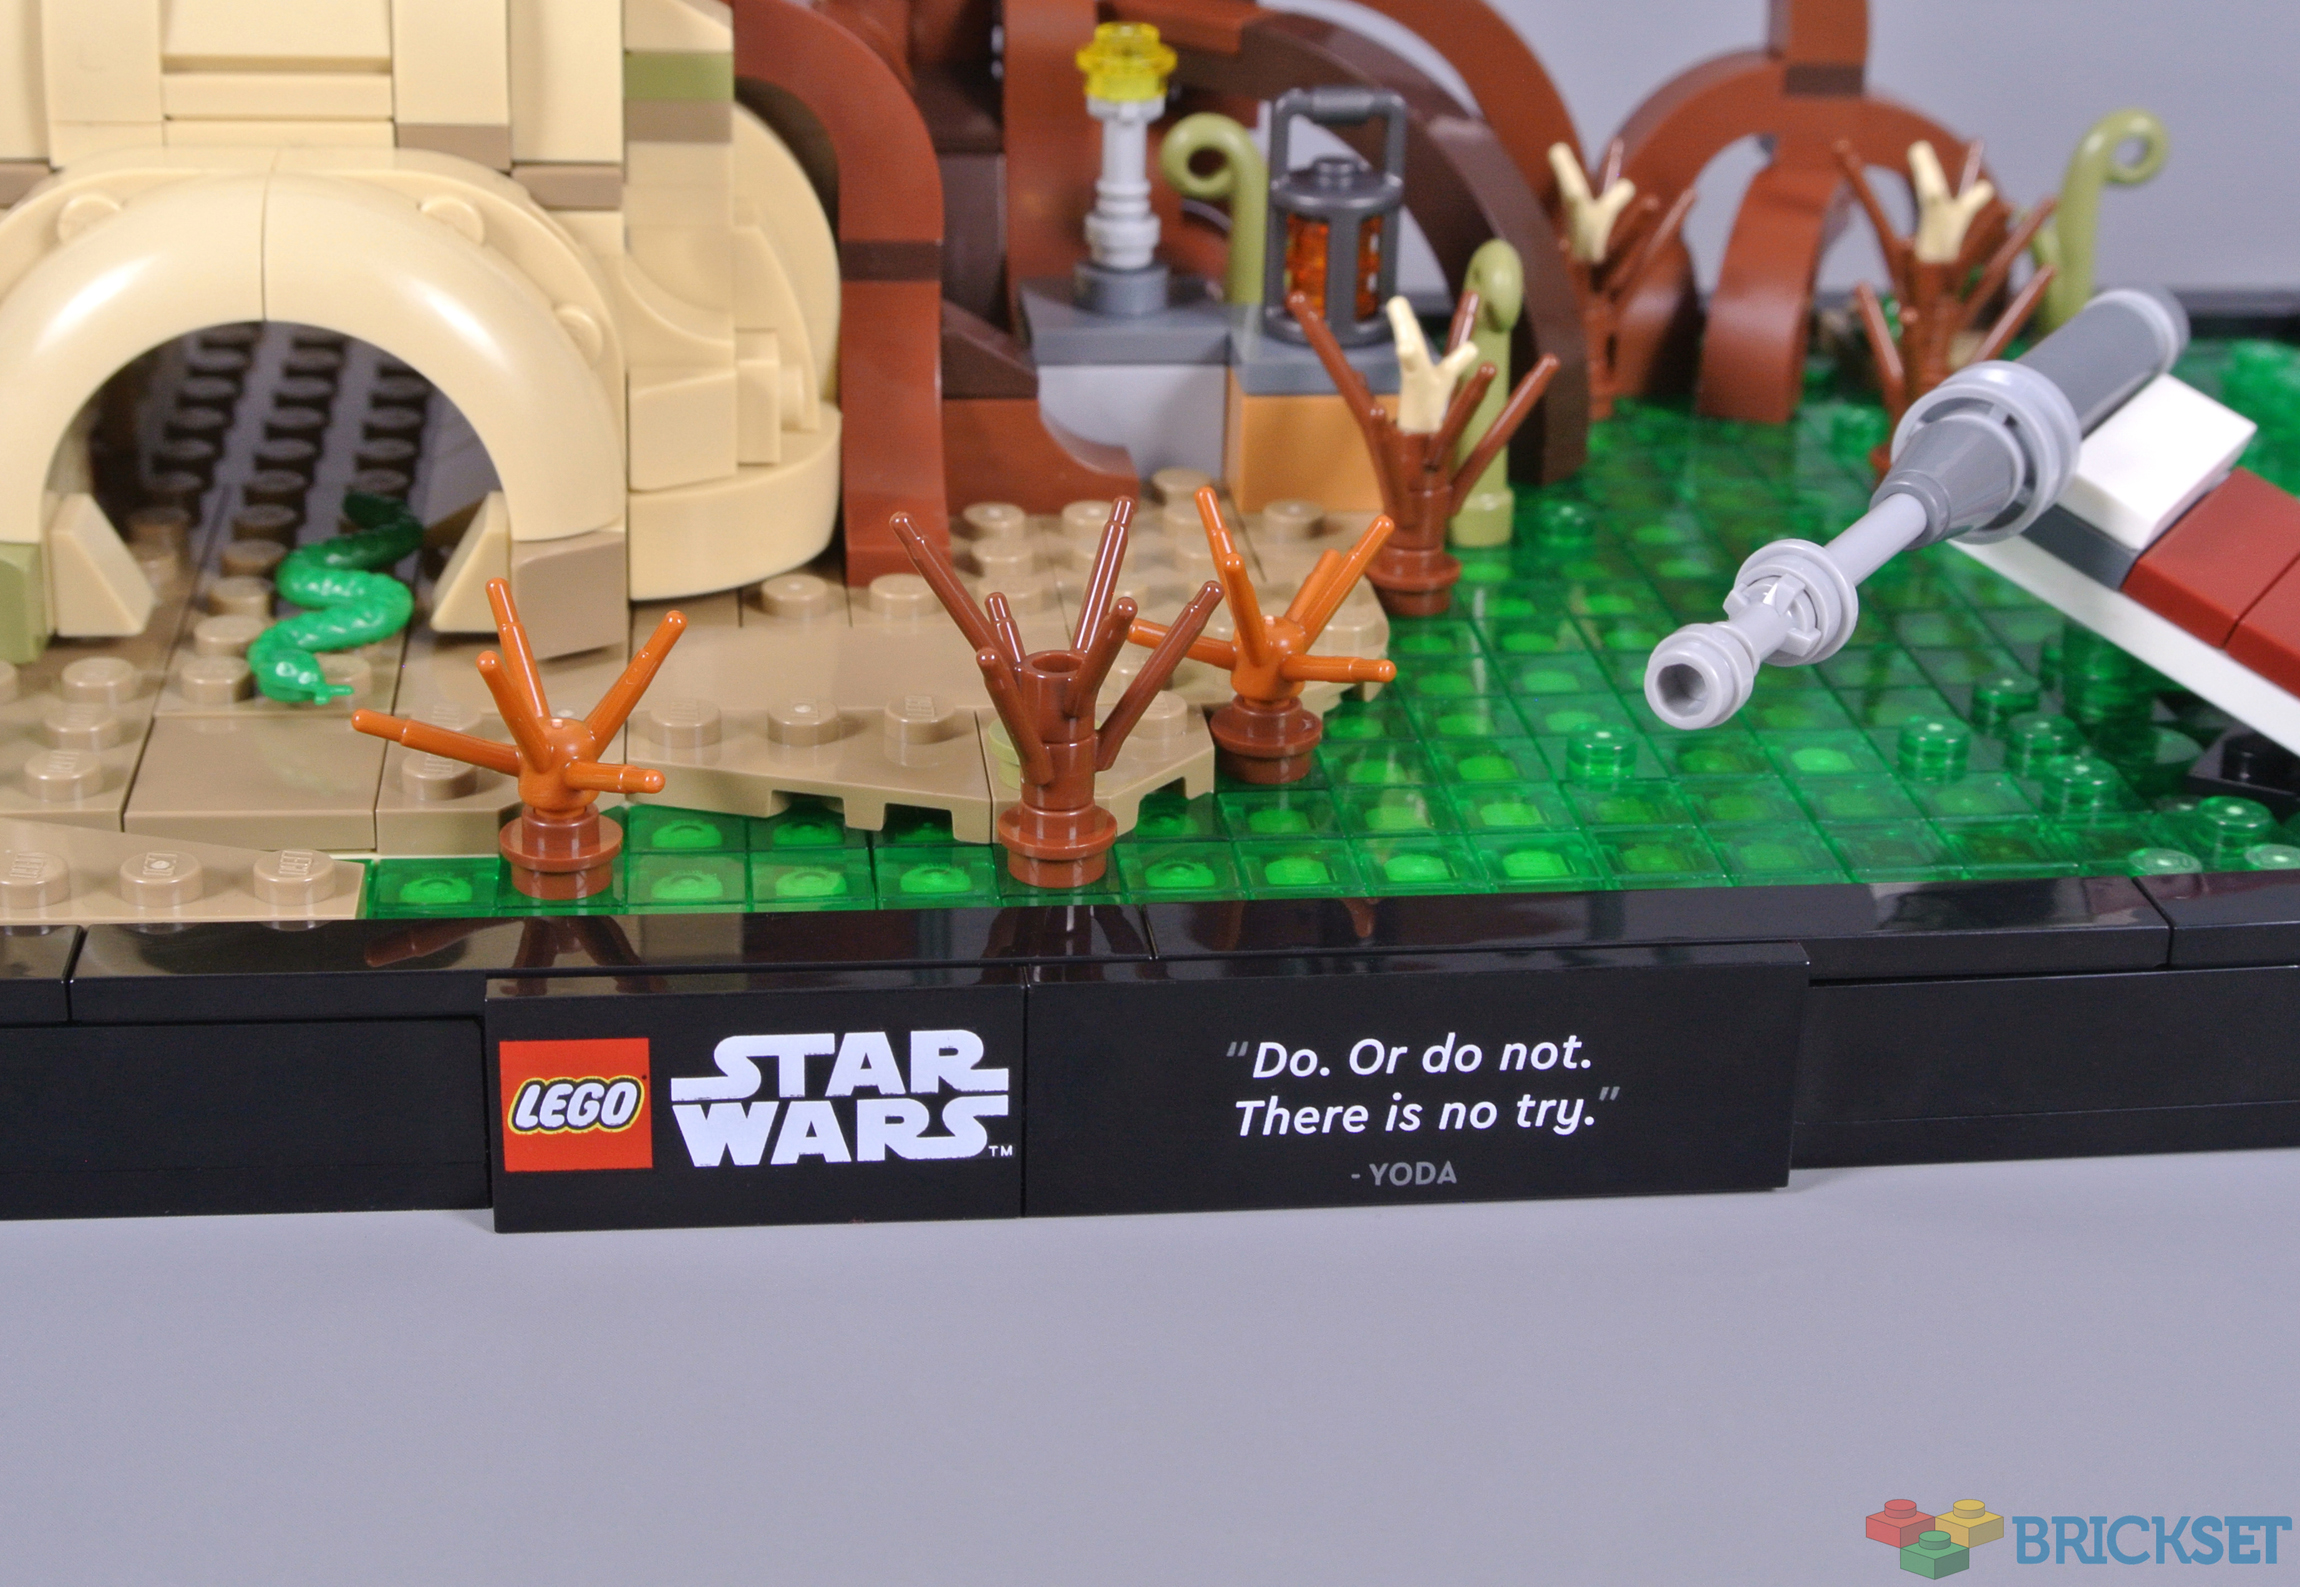 LEGO 75330 Dagobah Jedi Training Diorama Review – Lightailing